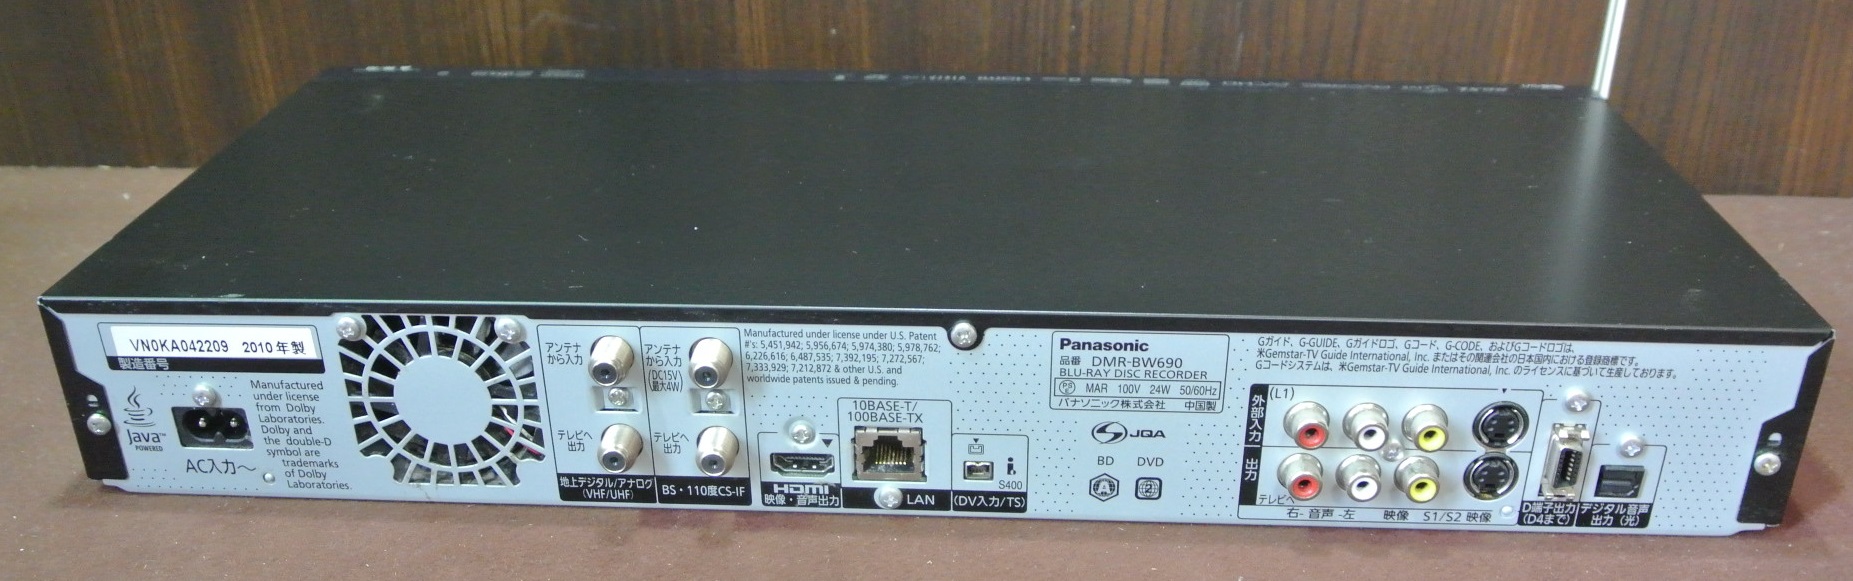 Panasonic（パナソニック） 500GB・ダブルチューナー・HDD内蔵 ブルーレイレコーダー・DIGA DMR-BW690 群馬県伊勢崎